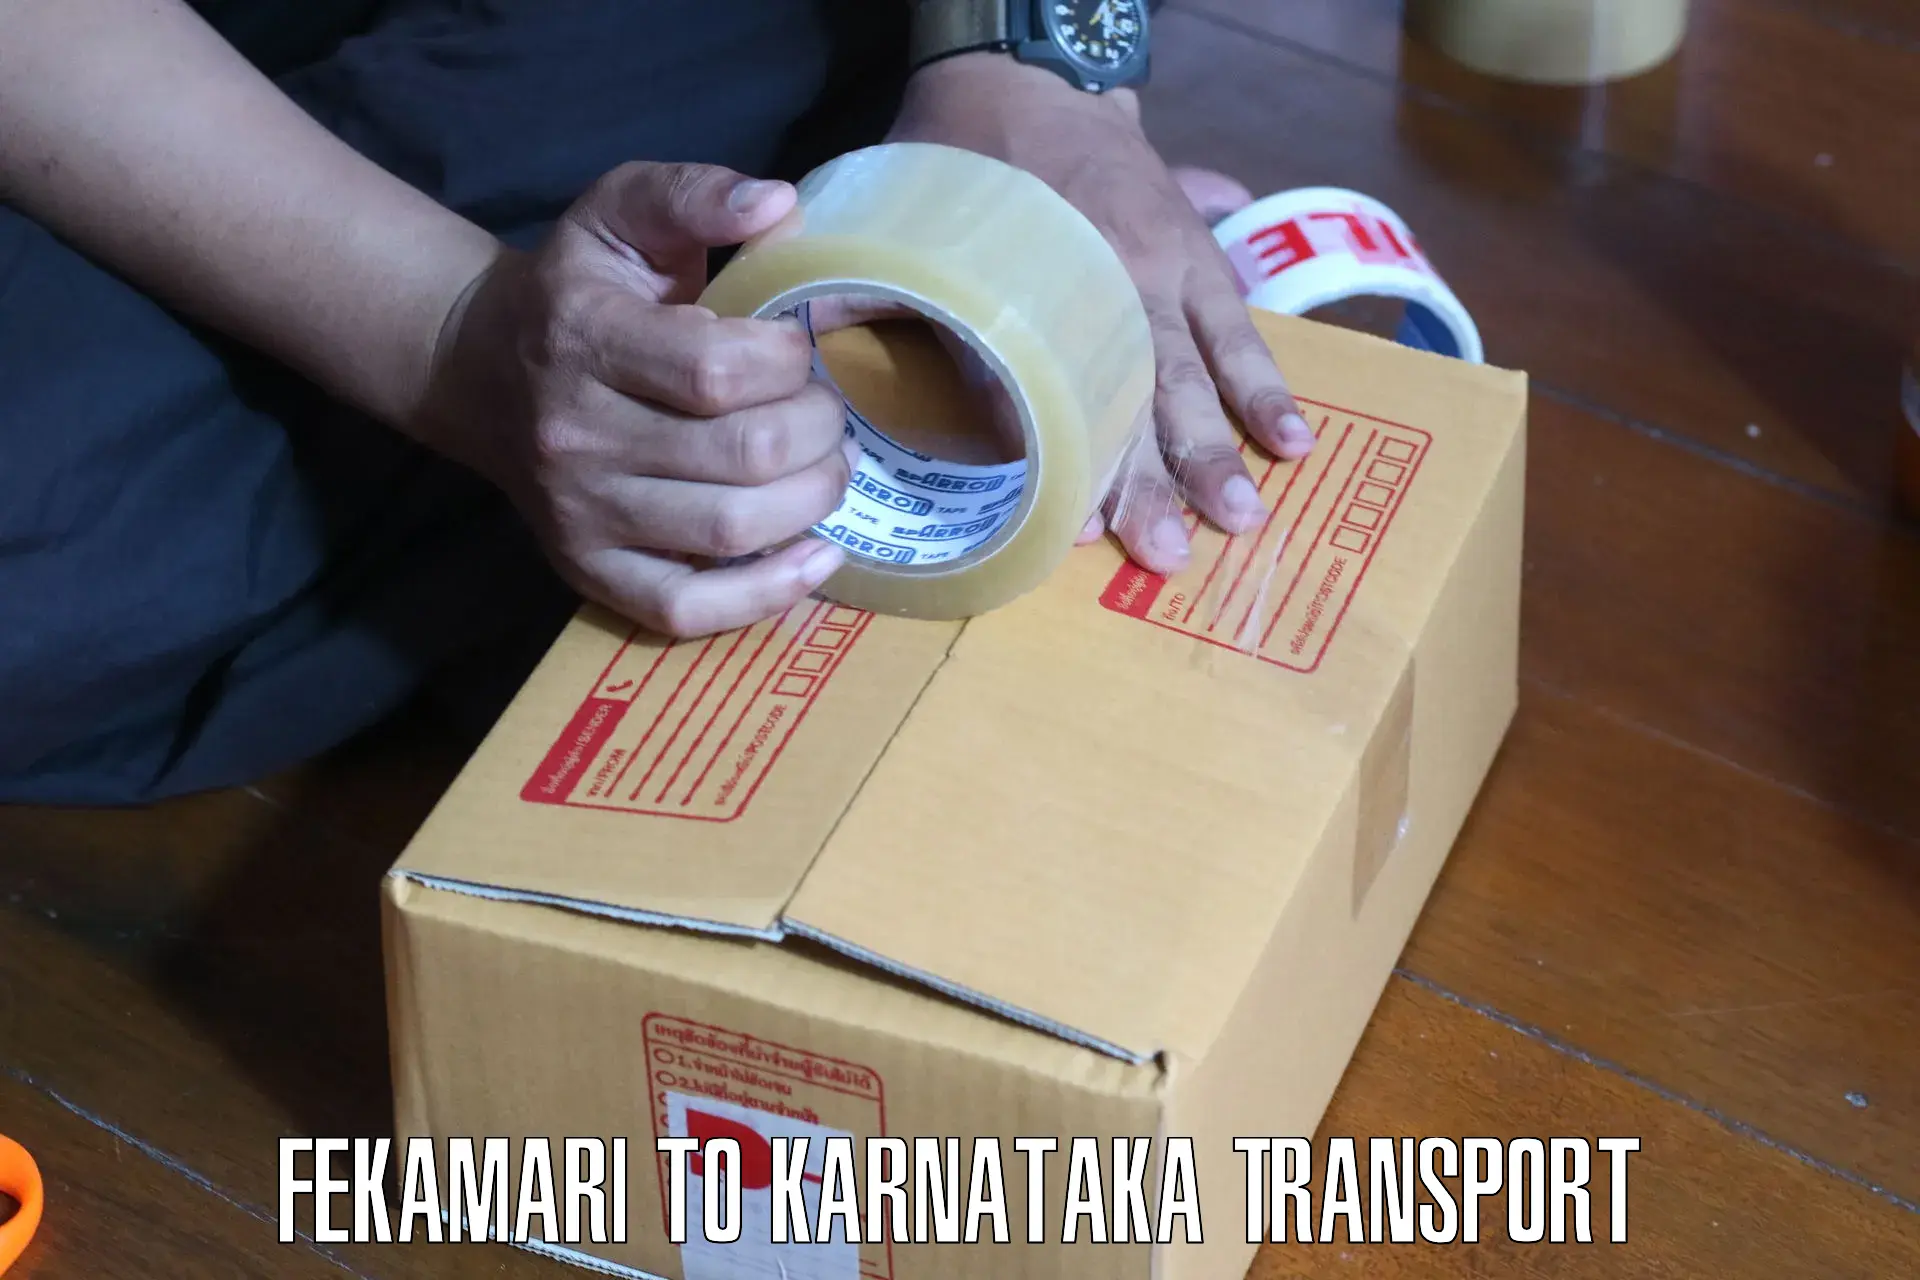 Furniture transport service Fekamari to Kanjarakatte